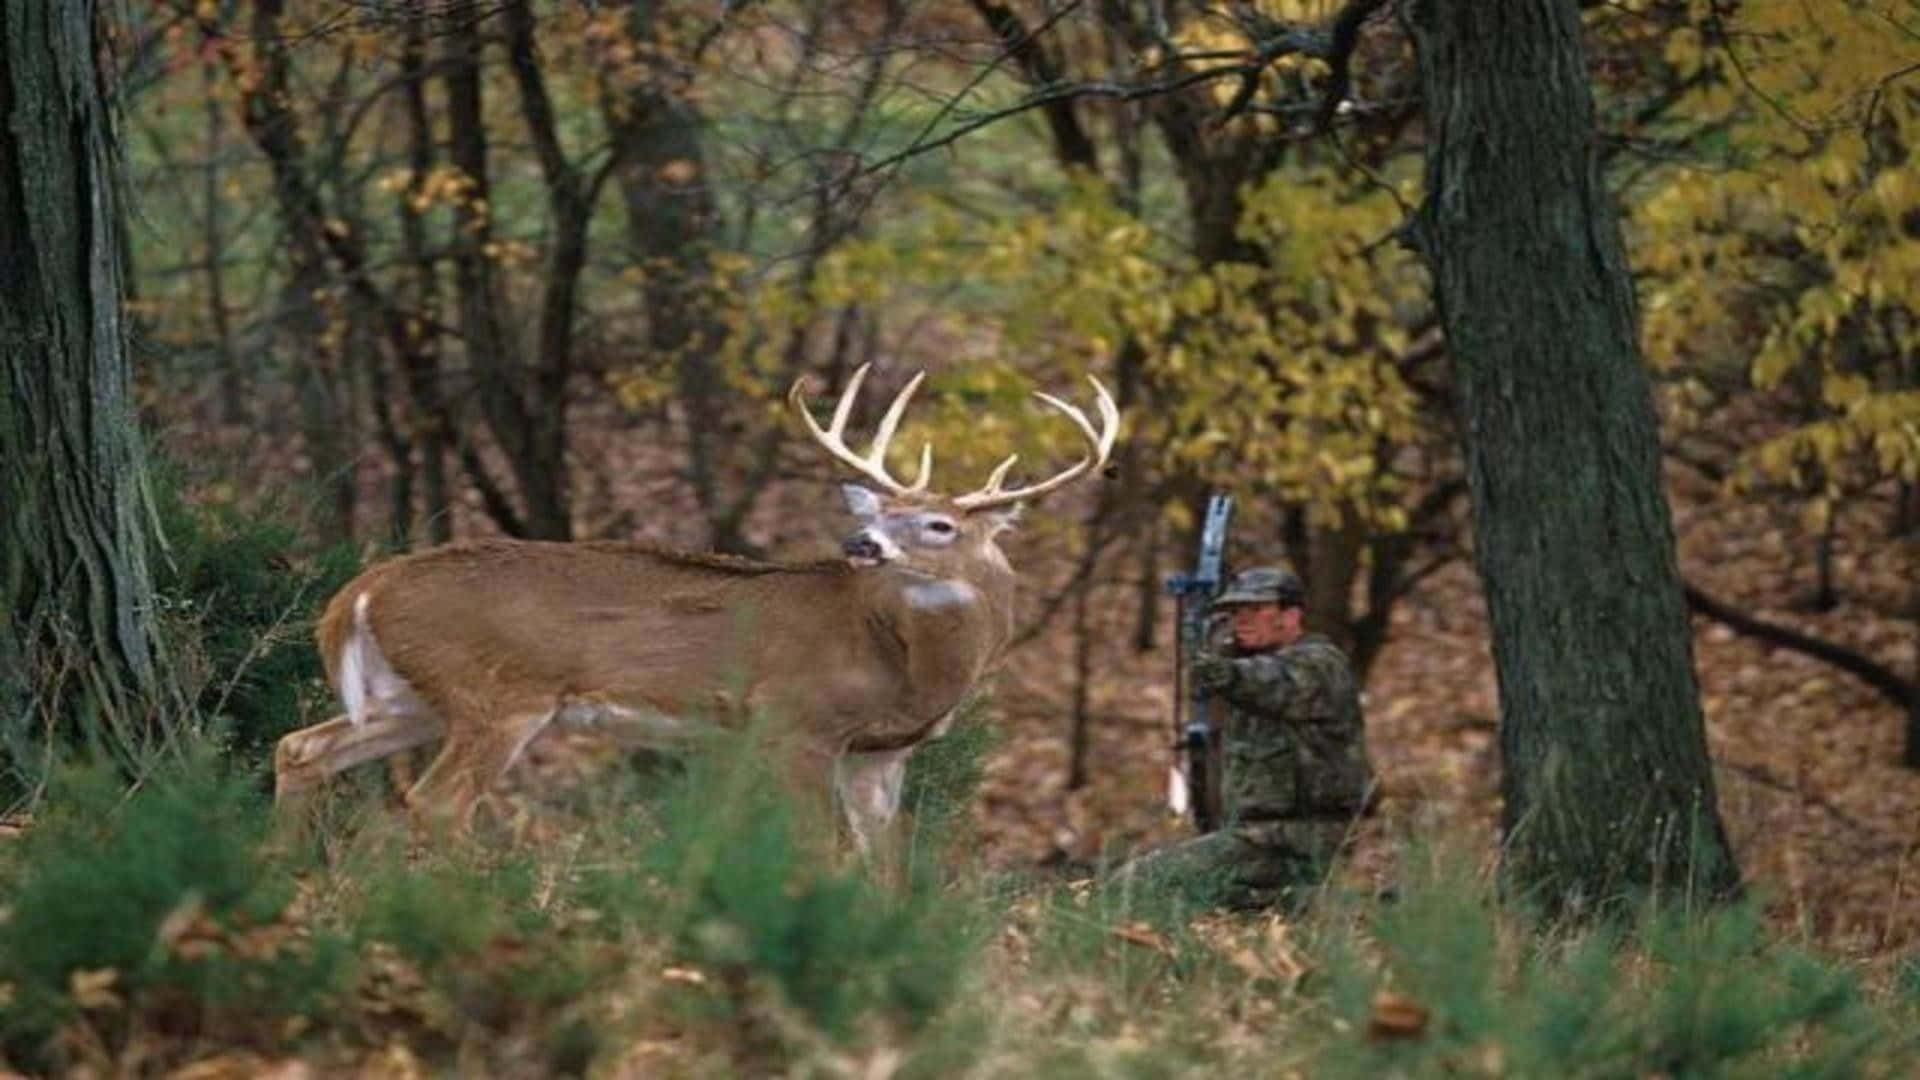 A Buck Taking a Rest in a Field